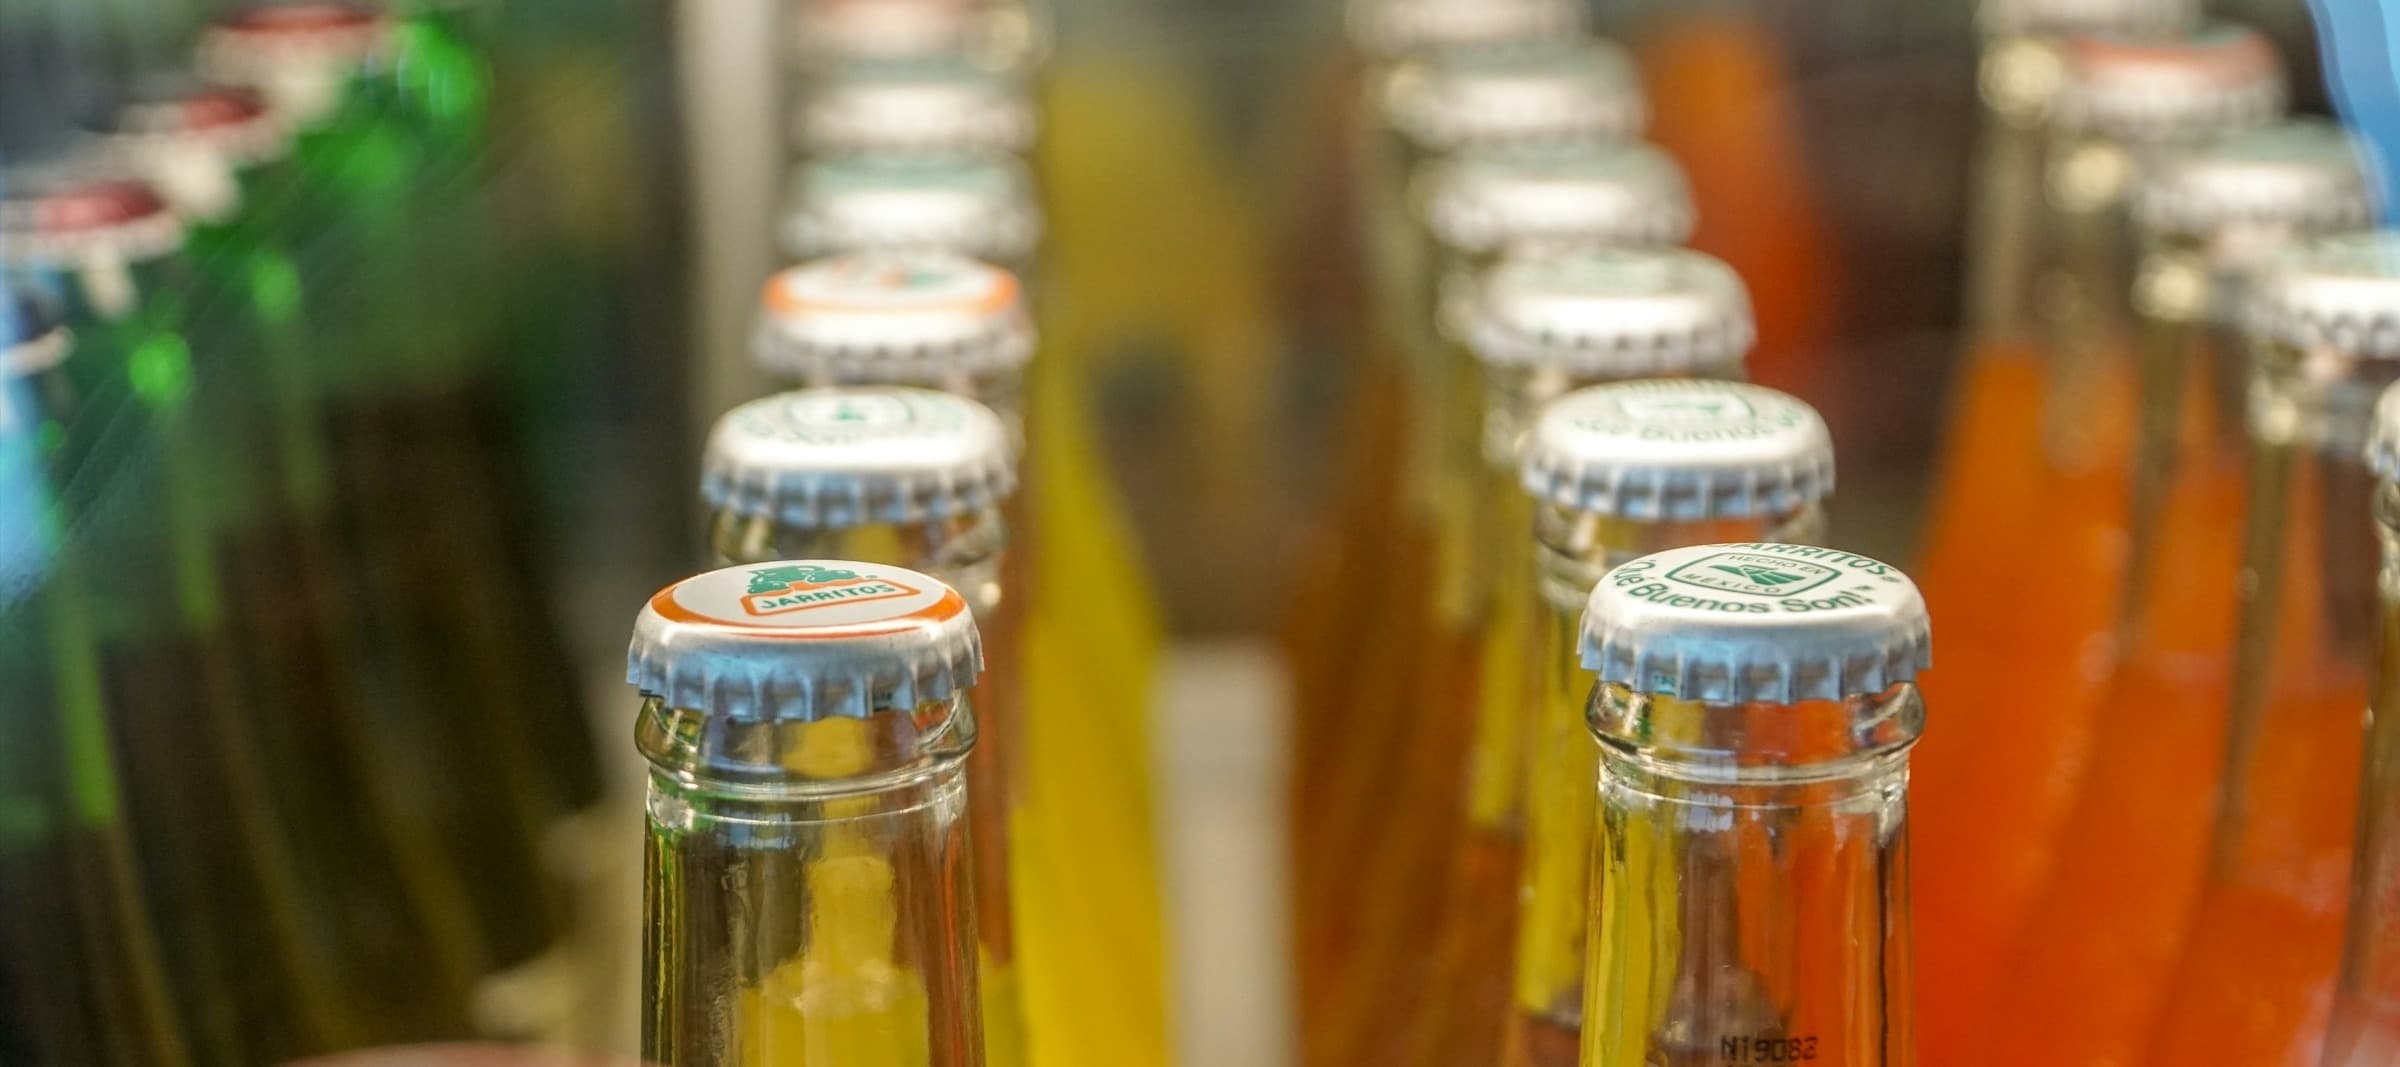 Фото новости: "В России снизилось производство безалкогольных напитков впервые за пять лет"